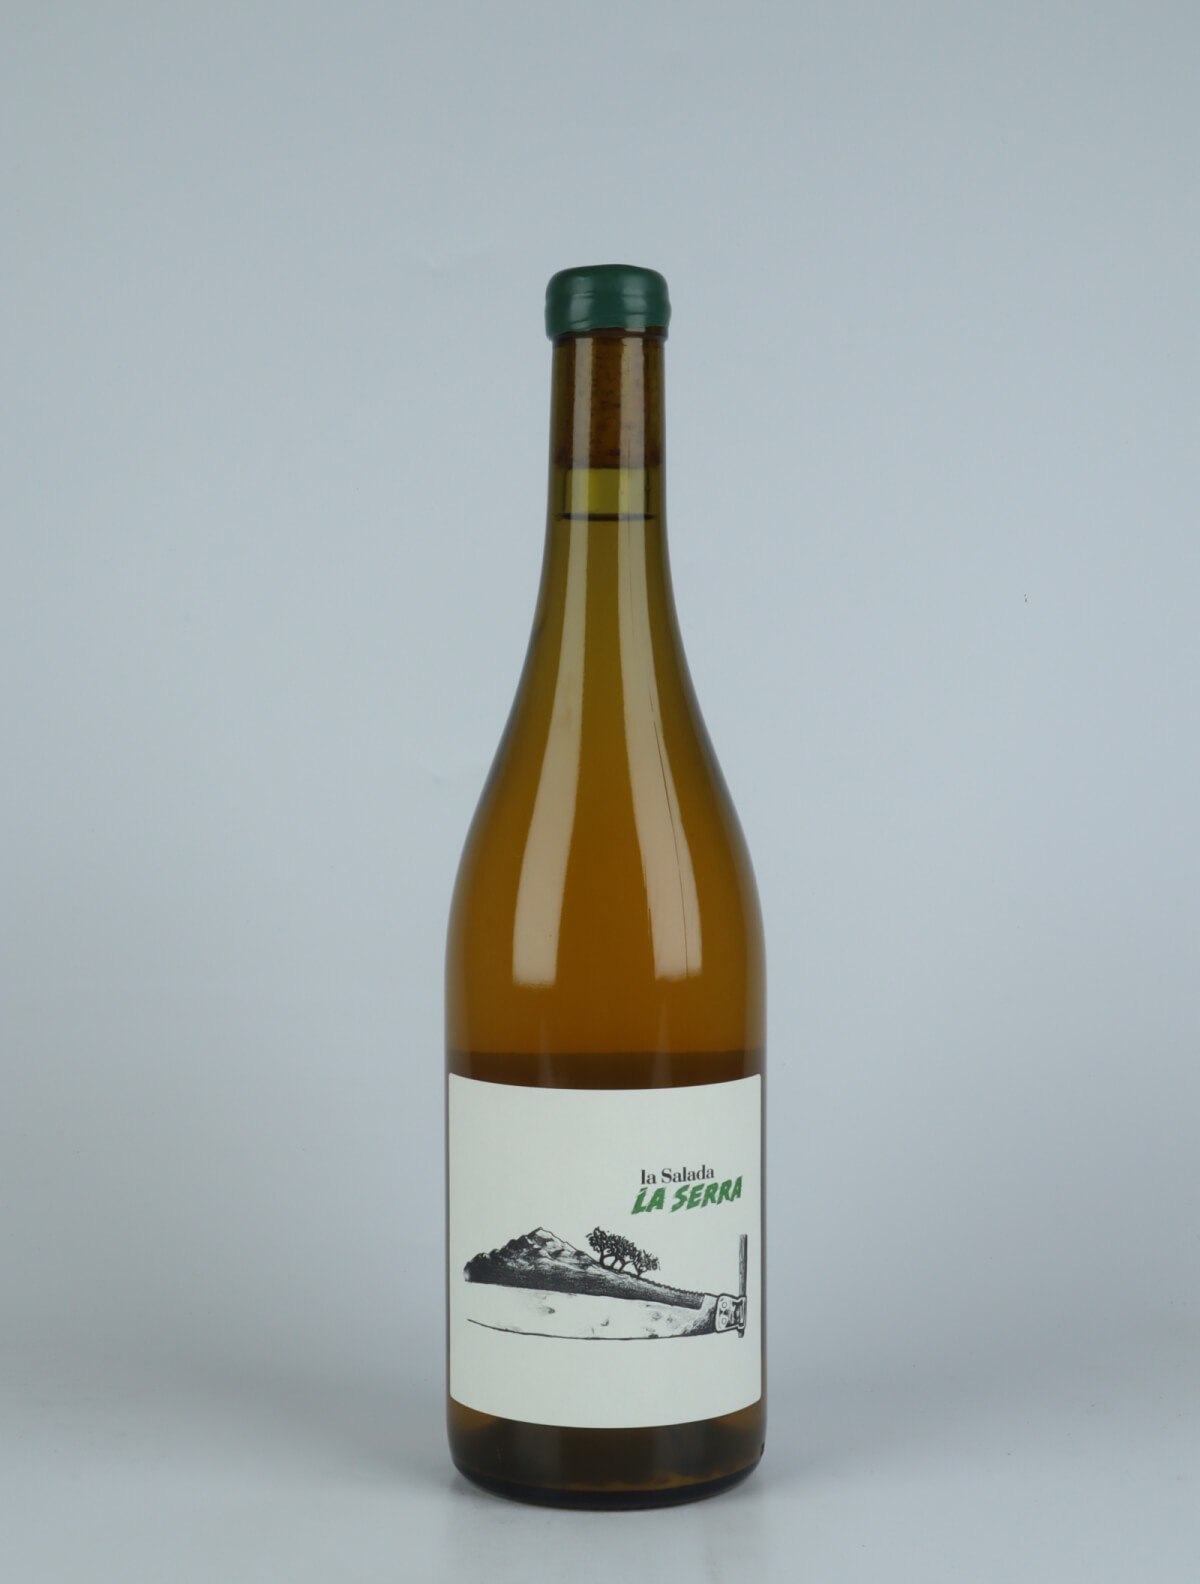 A bottle 2022 La Serra Orange wine from Celler la Salada, Penedès in Spain